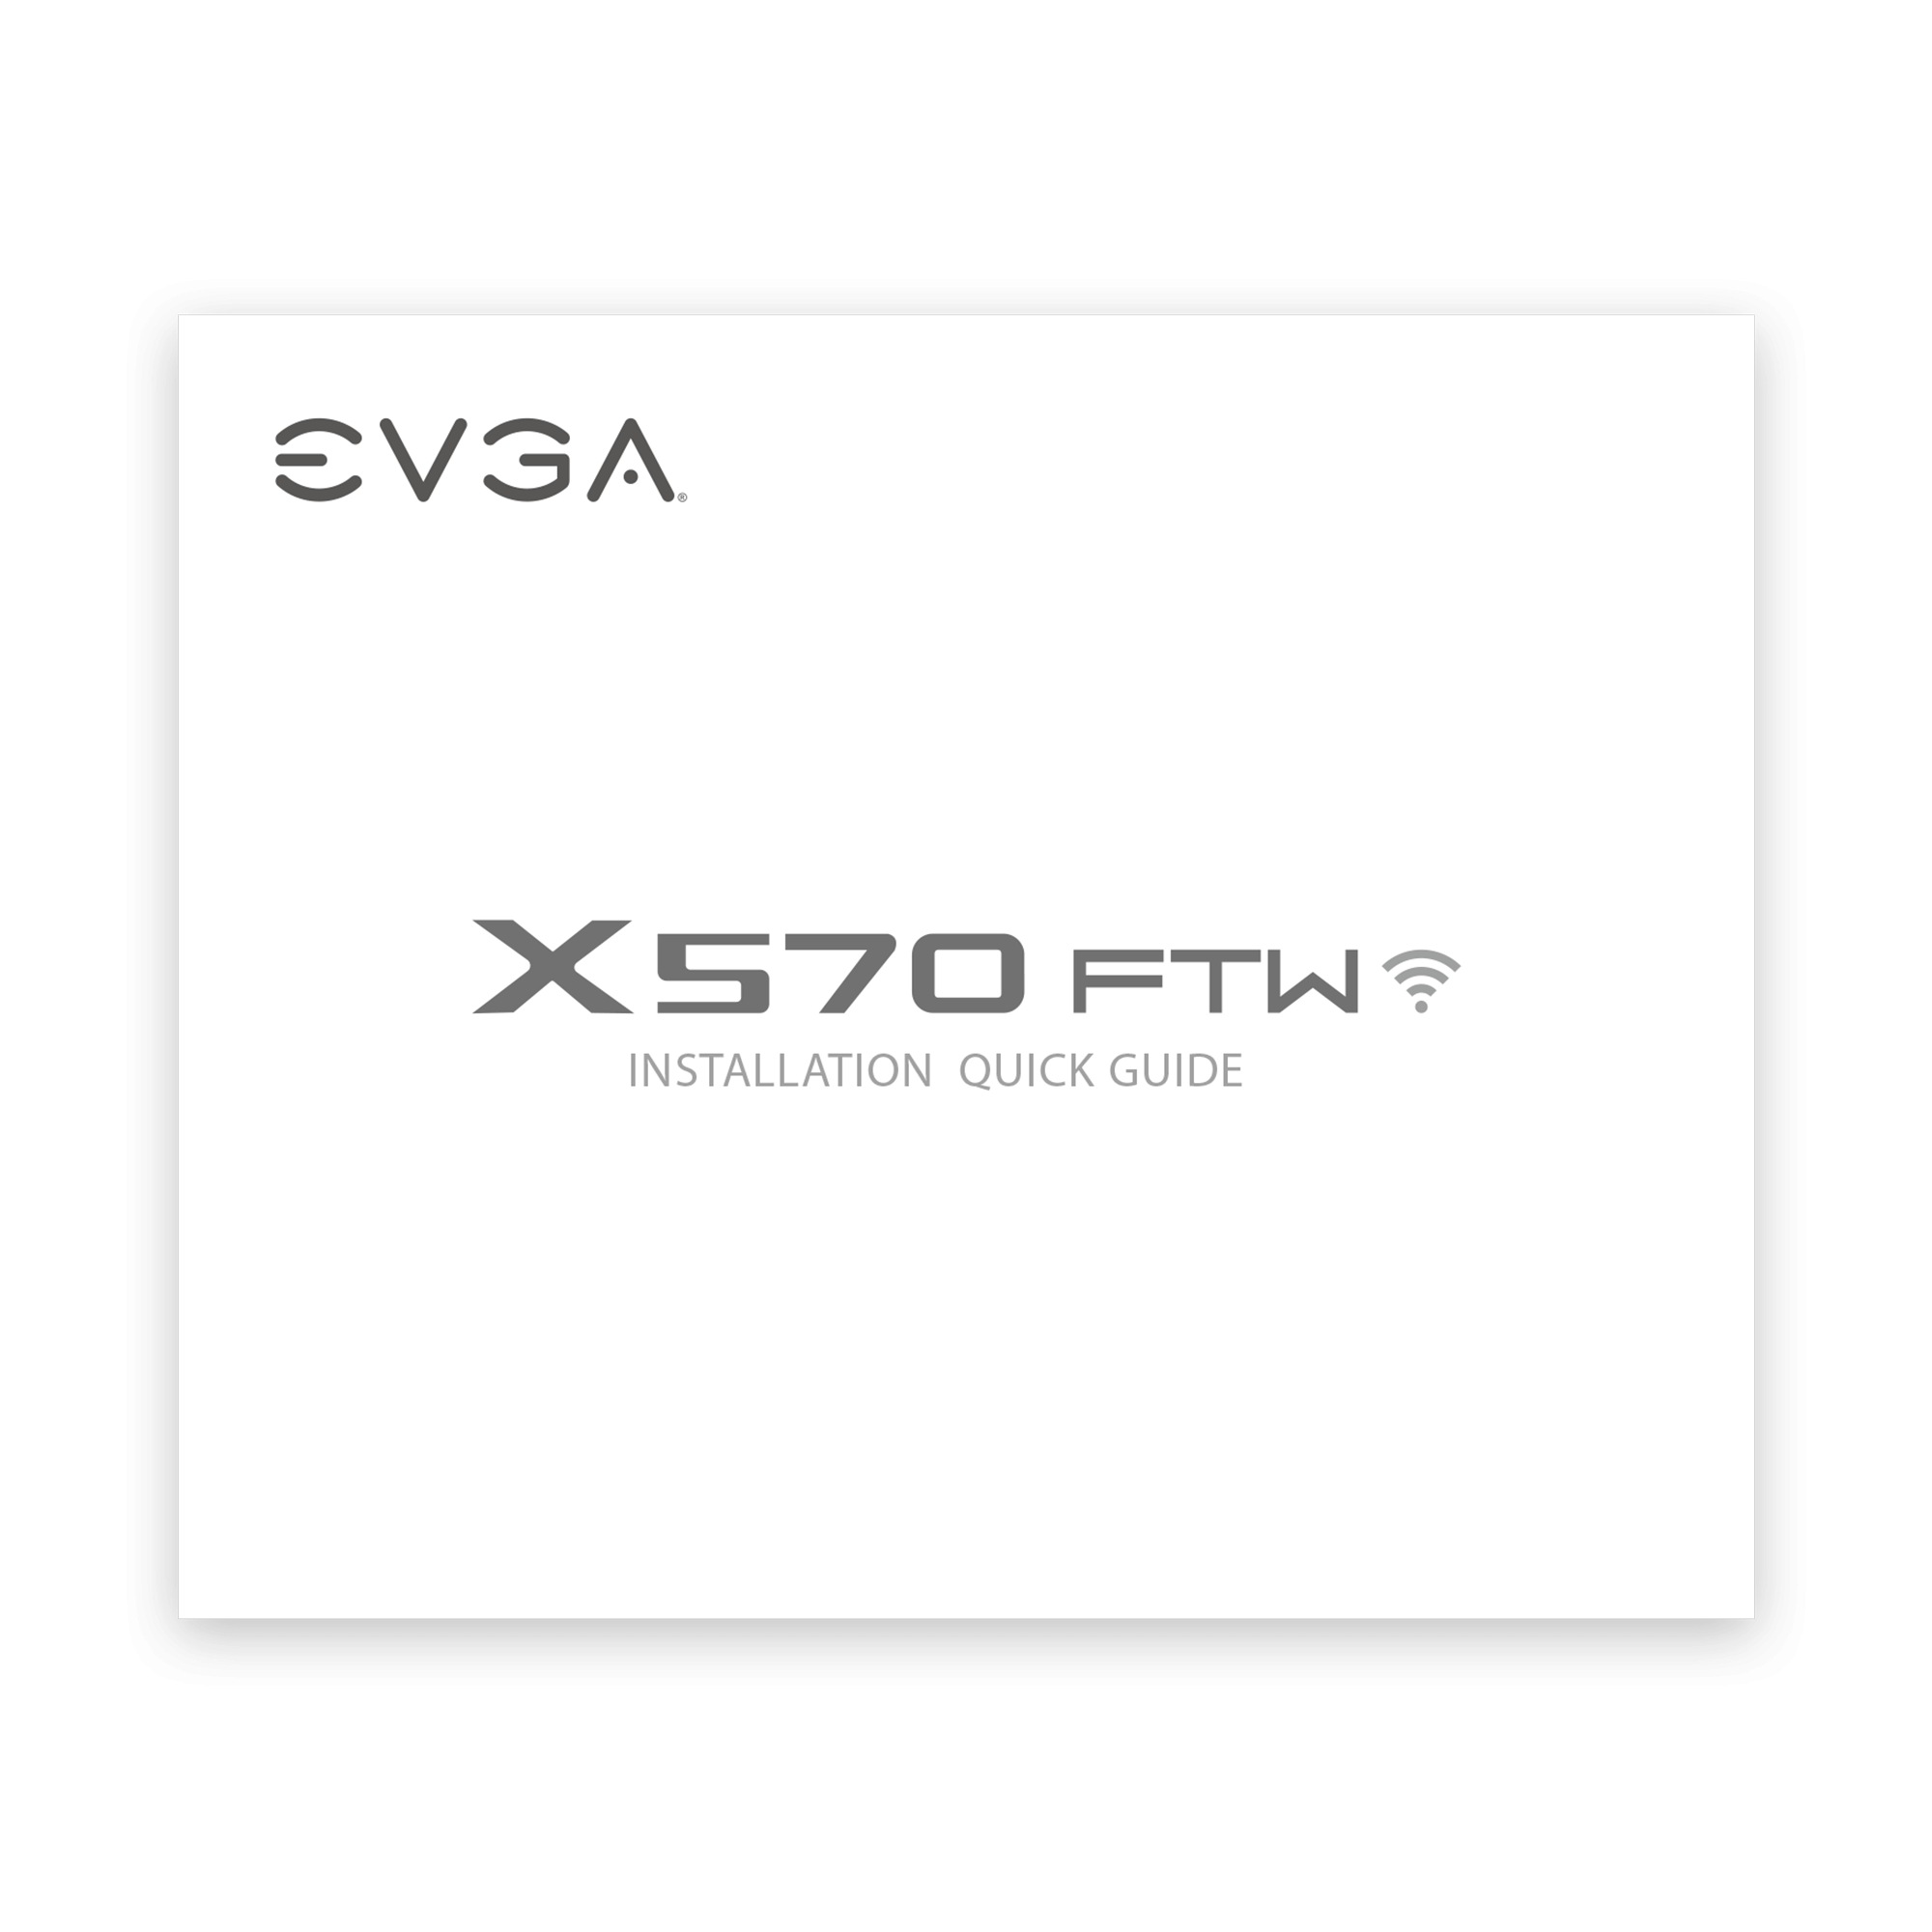 ベンチ 収納付 EVGA X570 FTW WiFi, 121-VR-A577-KR, AM4, AMD X570, PCIe Gen4, SATA  6Gb/s, Wi-Fi 6/BT5.2, USB 3.2 Gen2, M.2, ATX, AMD Motherboard＿並行輸入 